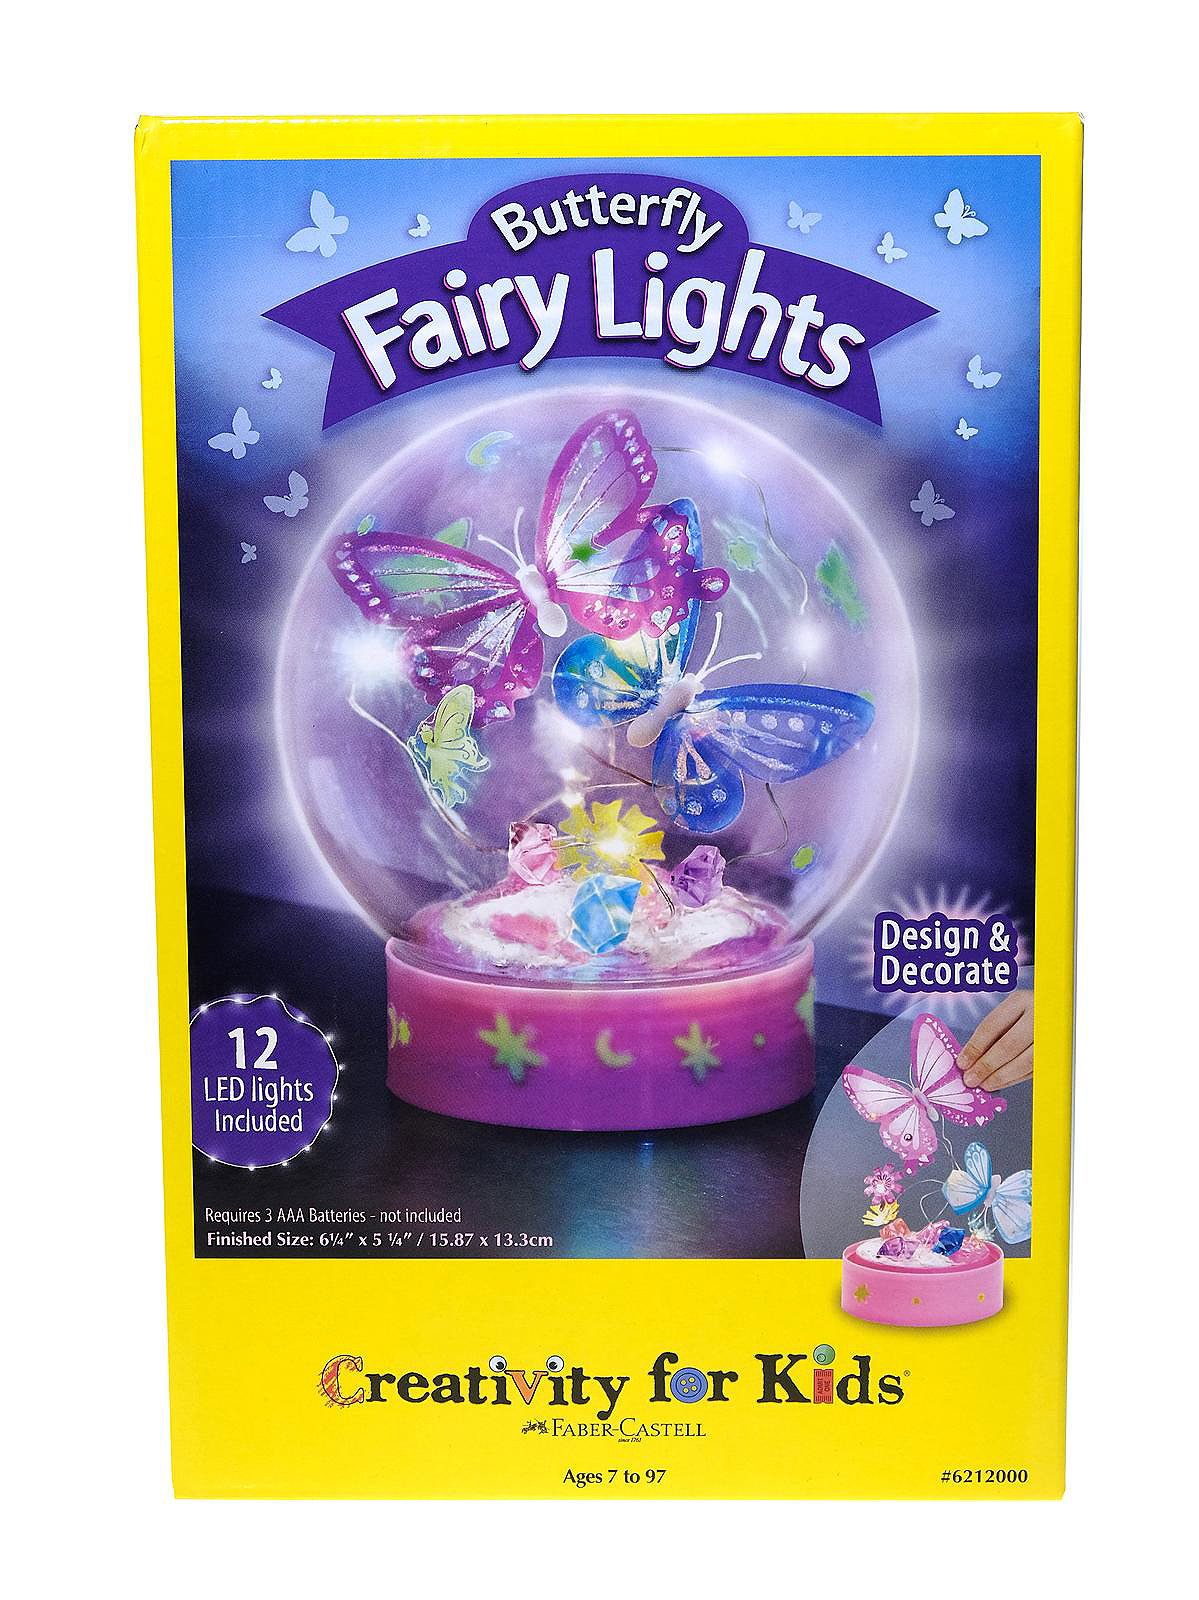 Creativity For Kids Butterfly Lights | MisterArt.com